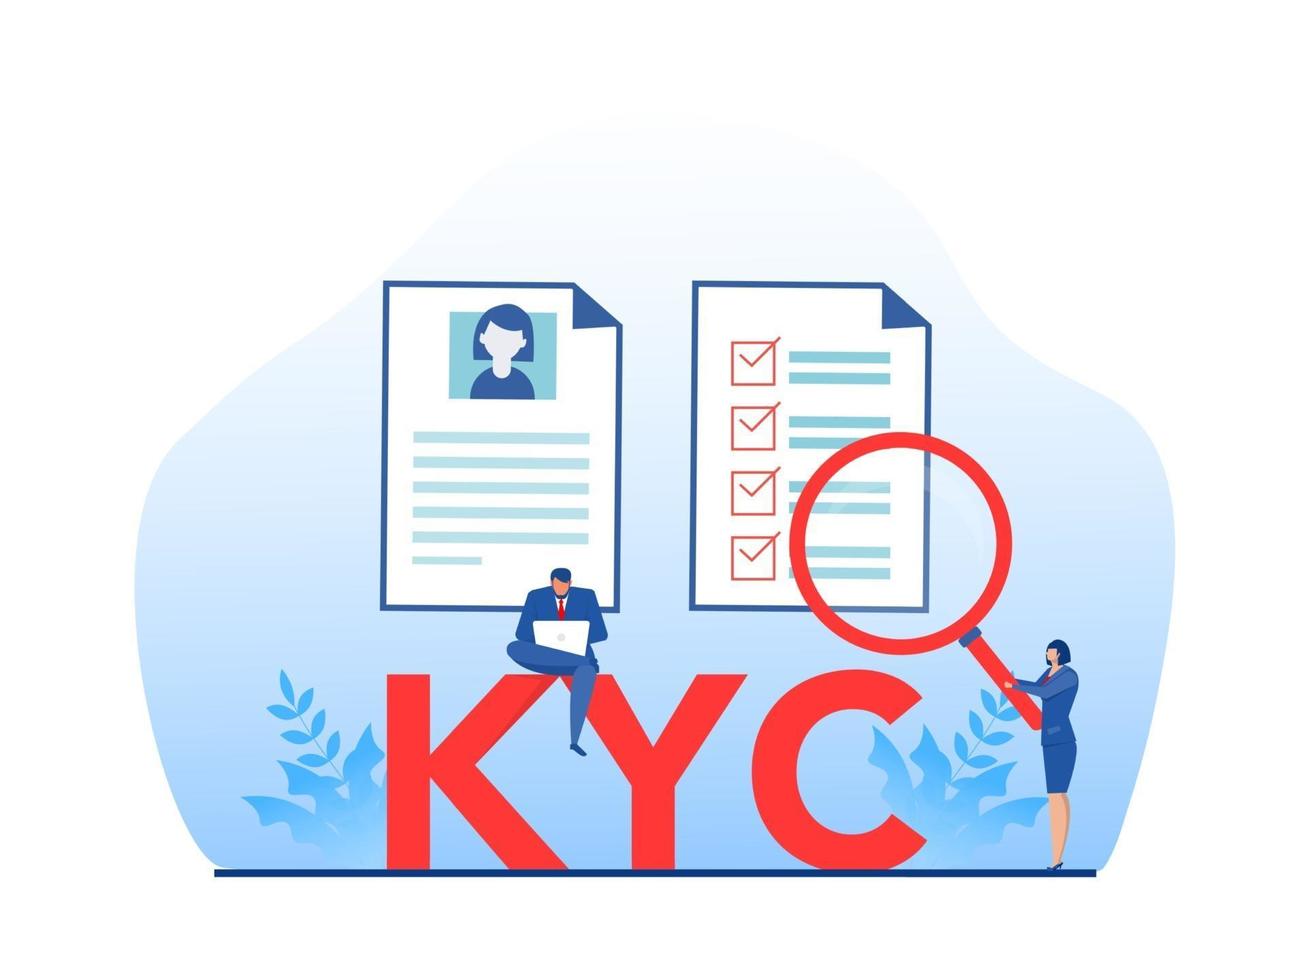 kyc ou conheça seu cliente com negócio verificando a identidade do conceito de seus clientes junto aos parceiros por meio de um ilustrador vetorial de lupa vetor